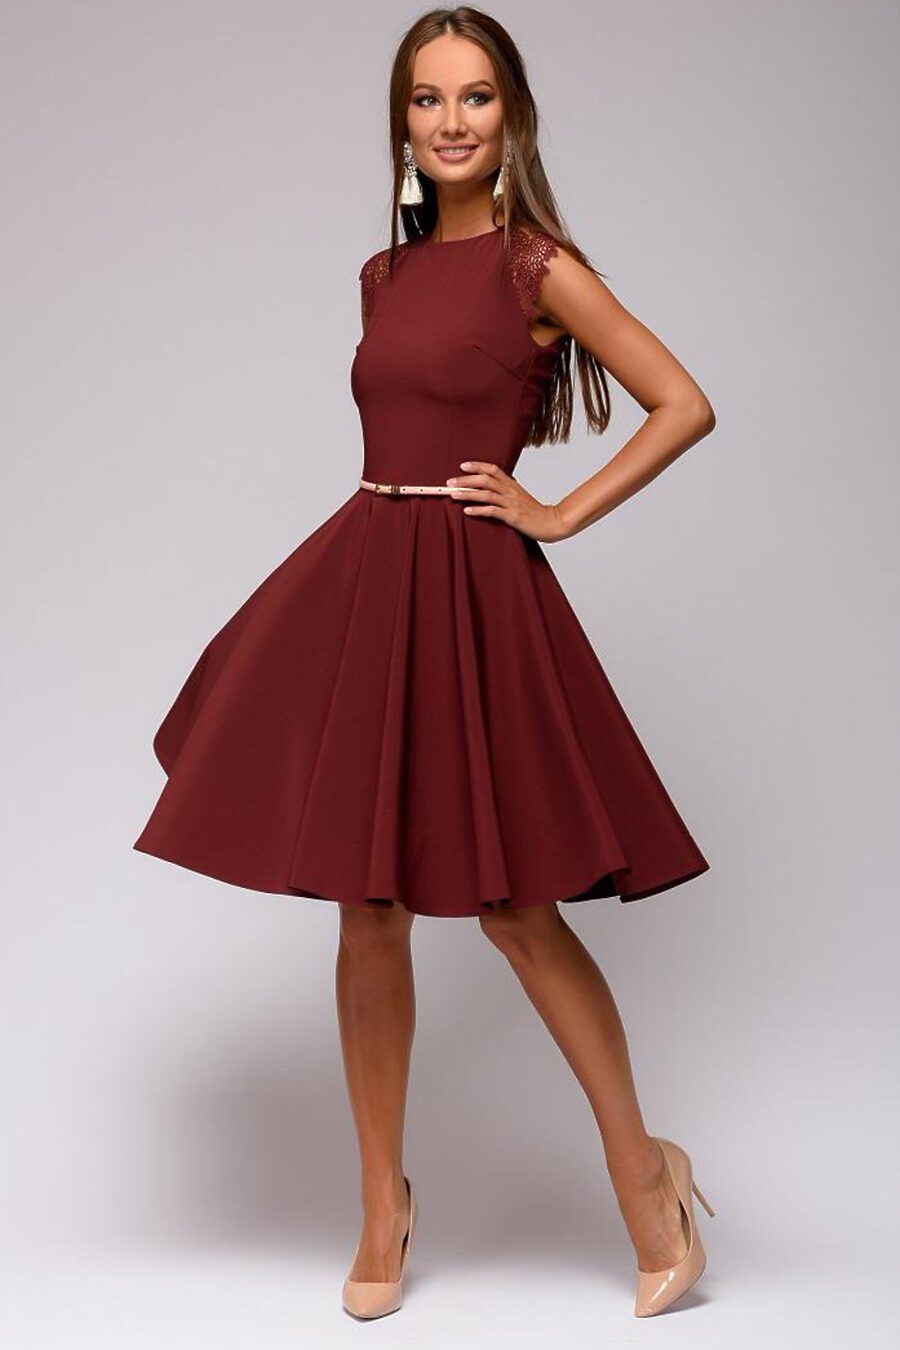 Платья чуть ниже колен. Бордовое платье. Бордовое платье короткое. Бордовое вечернее платье. Бордовое коктейльное платье.